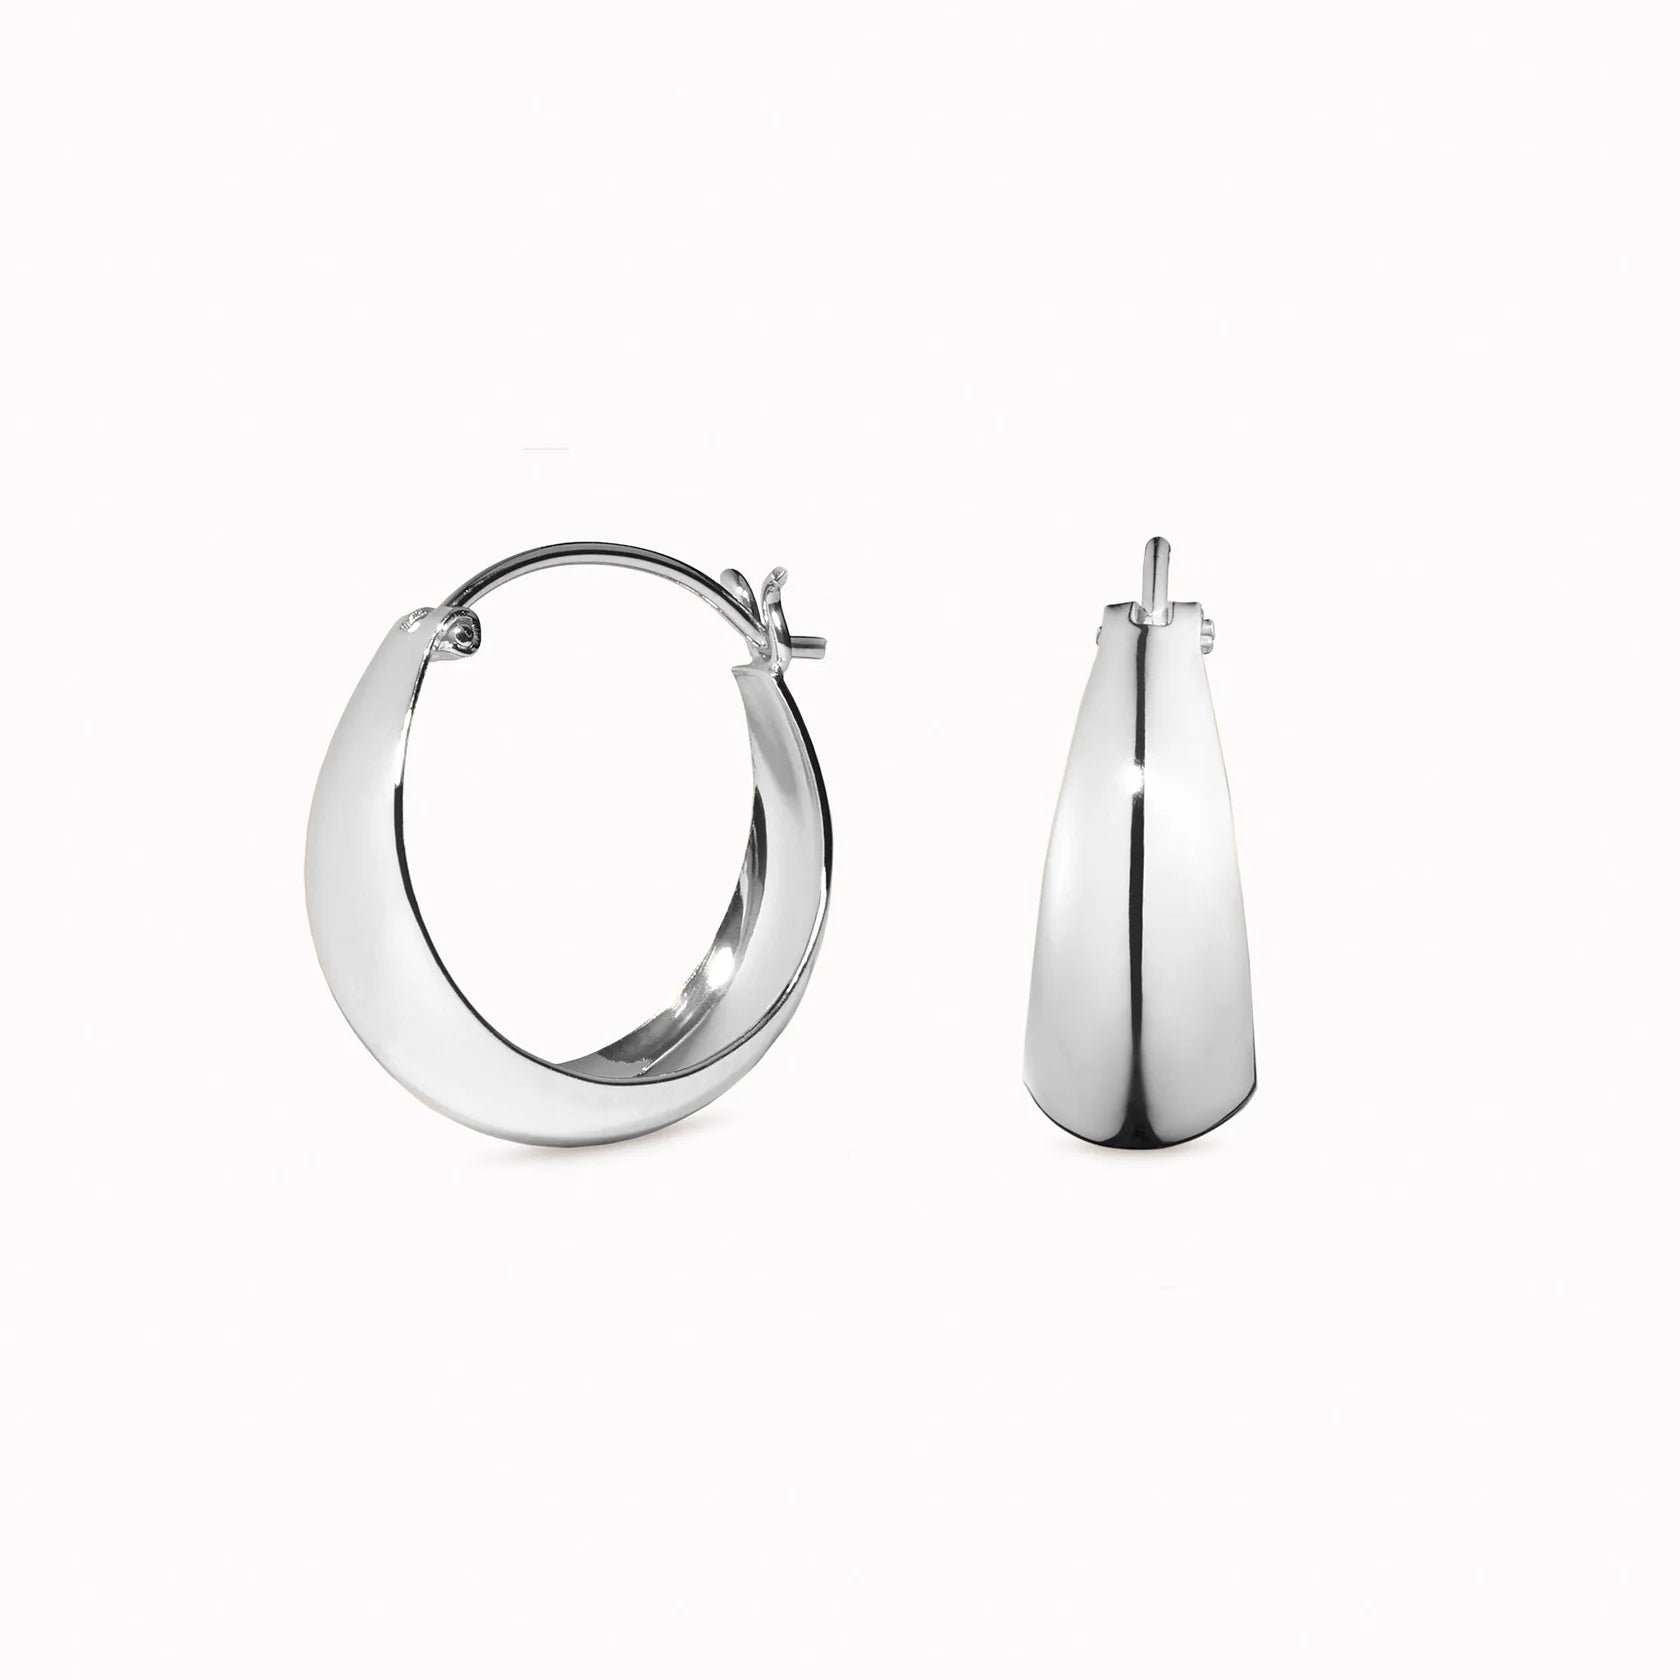 White Gold vs Silver - Chunky Silver Hoop Earrings - Jorunn

